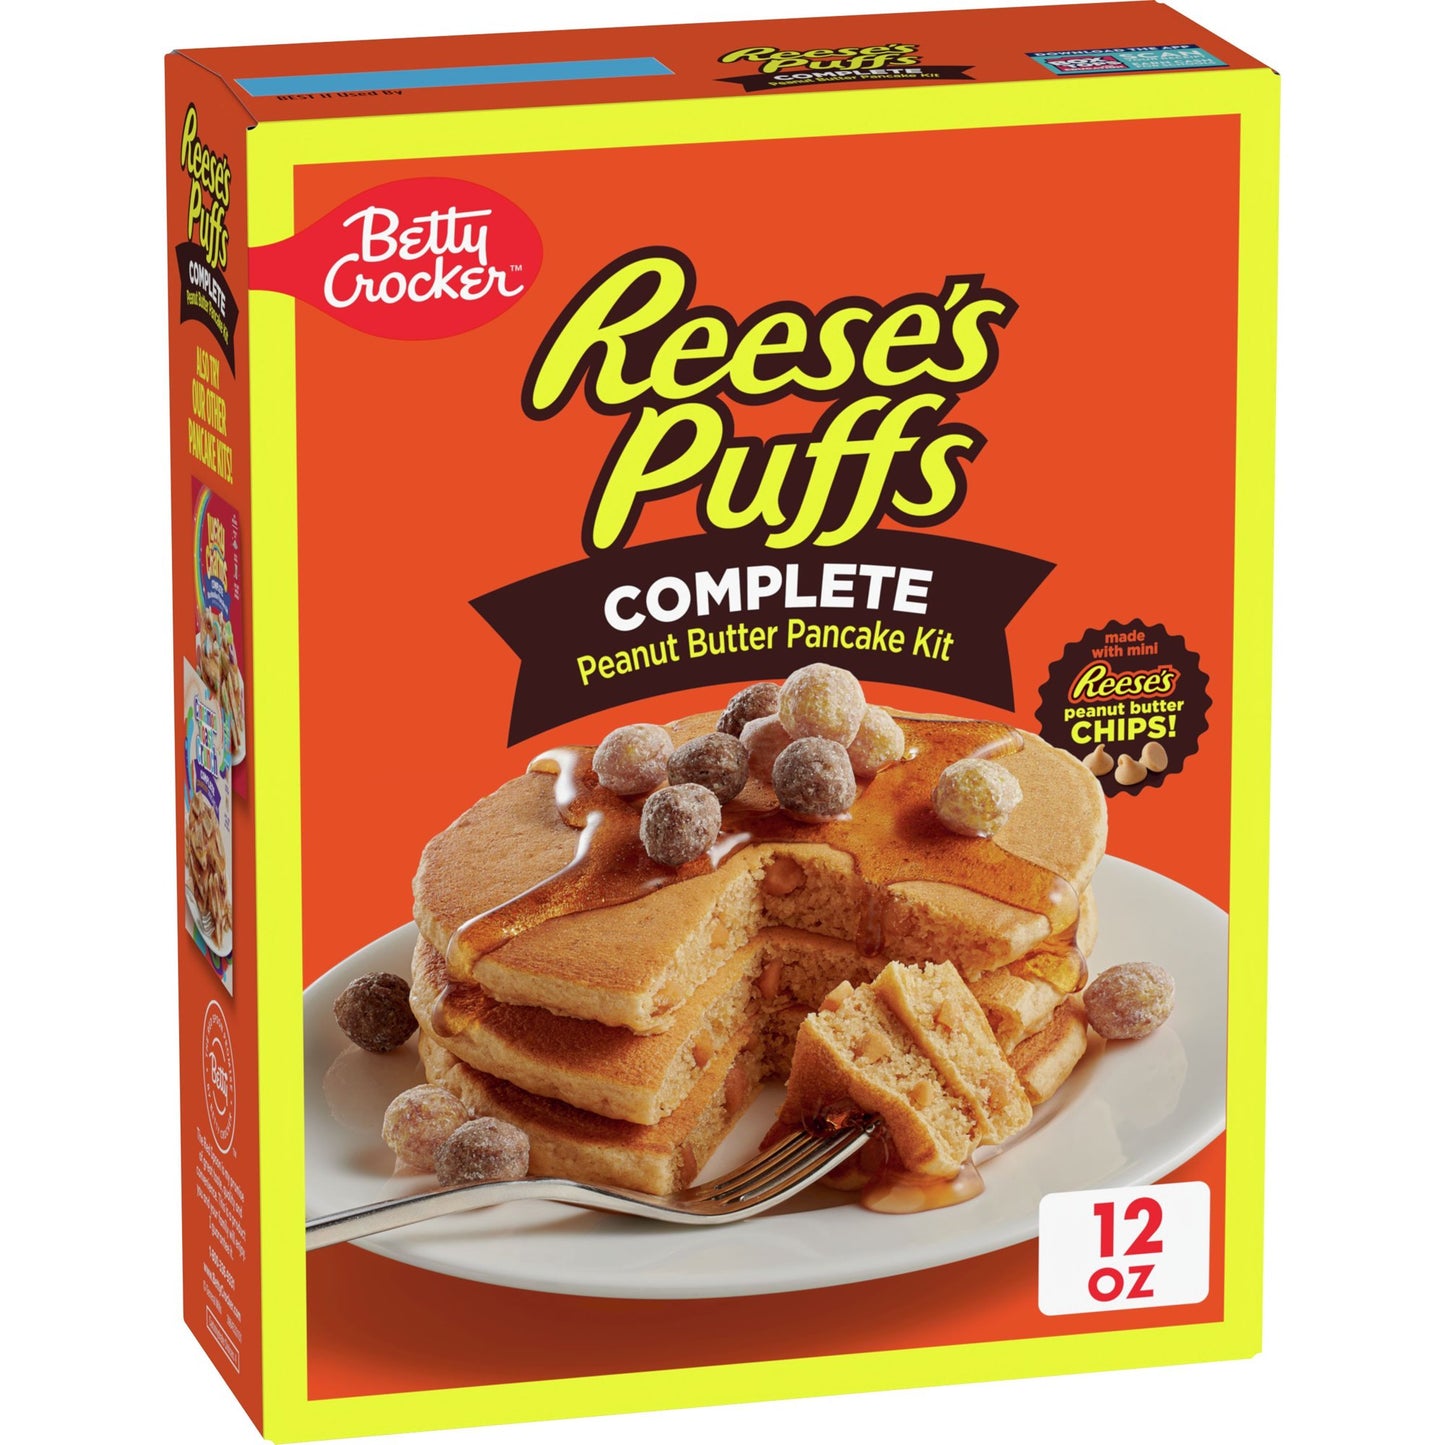 Betty Crocker REESE'S PUFFS Peanut Butter Pancake Mix, 12 oz.